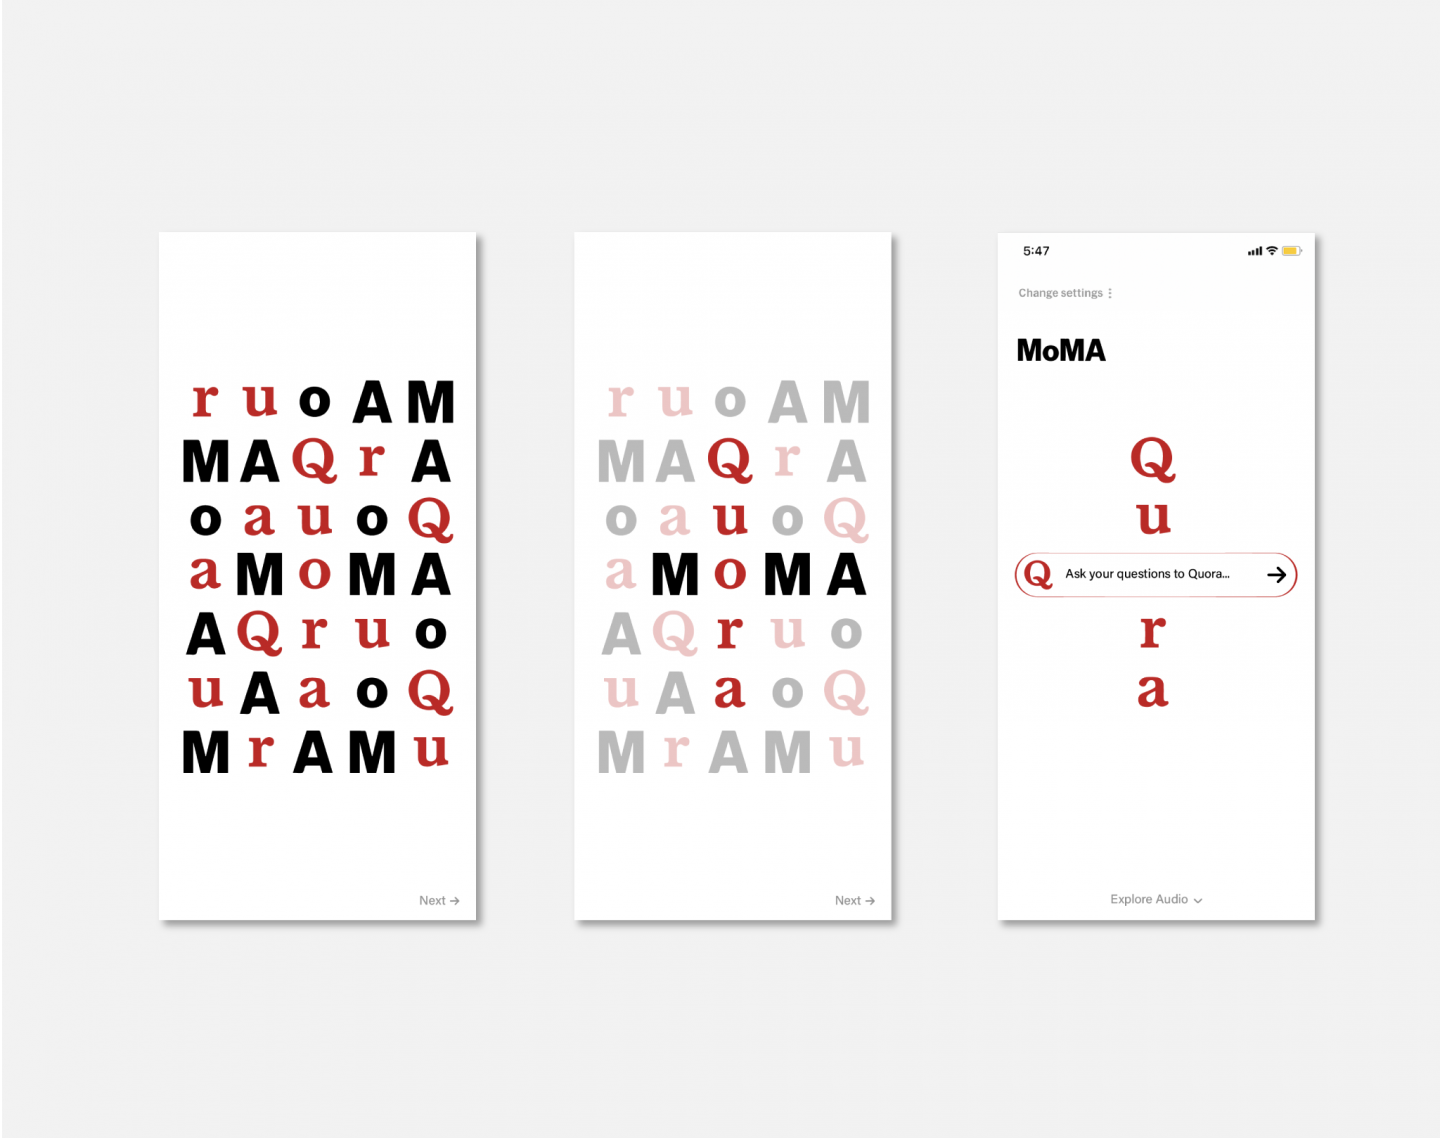 MoMA+Quora App Design